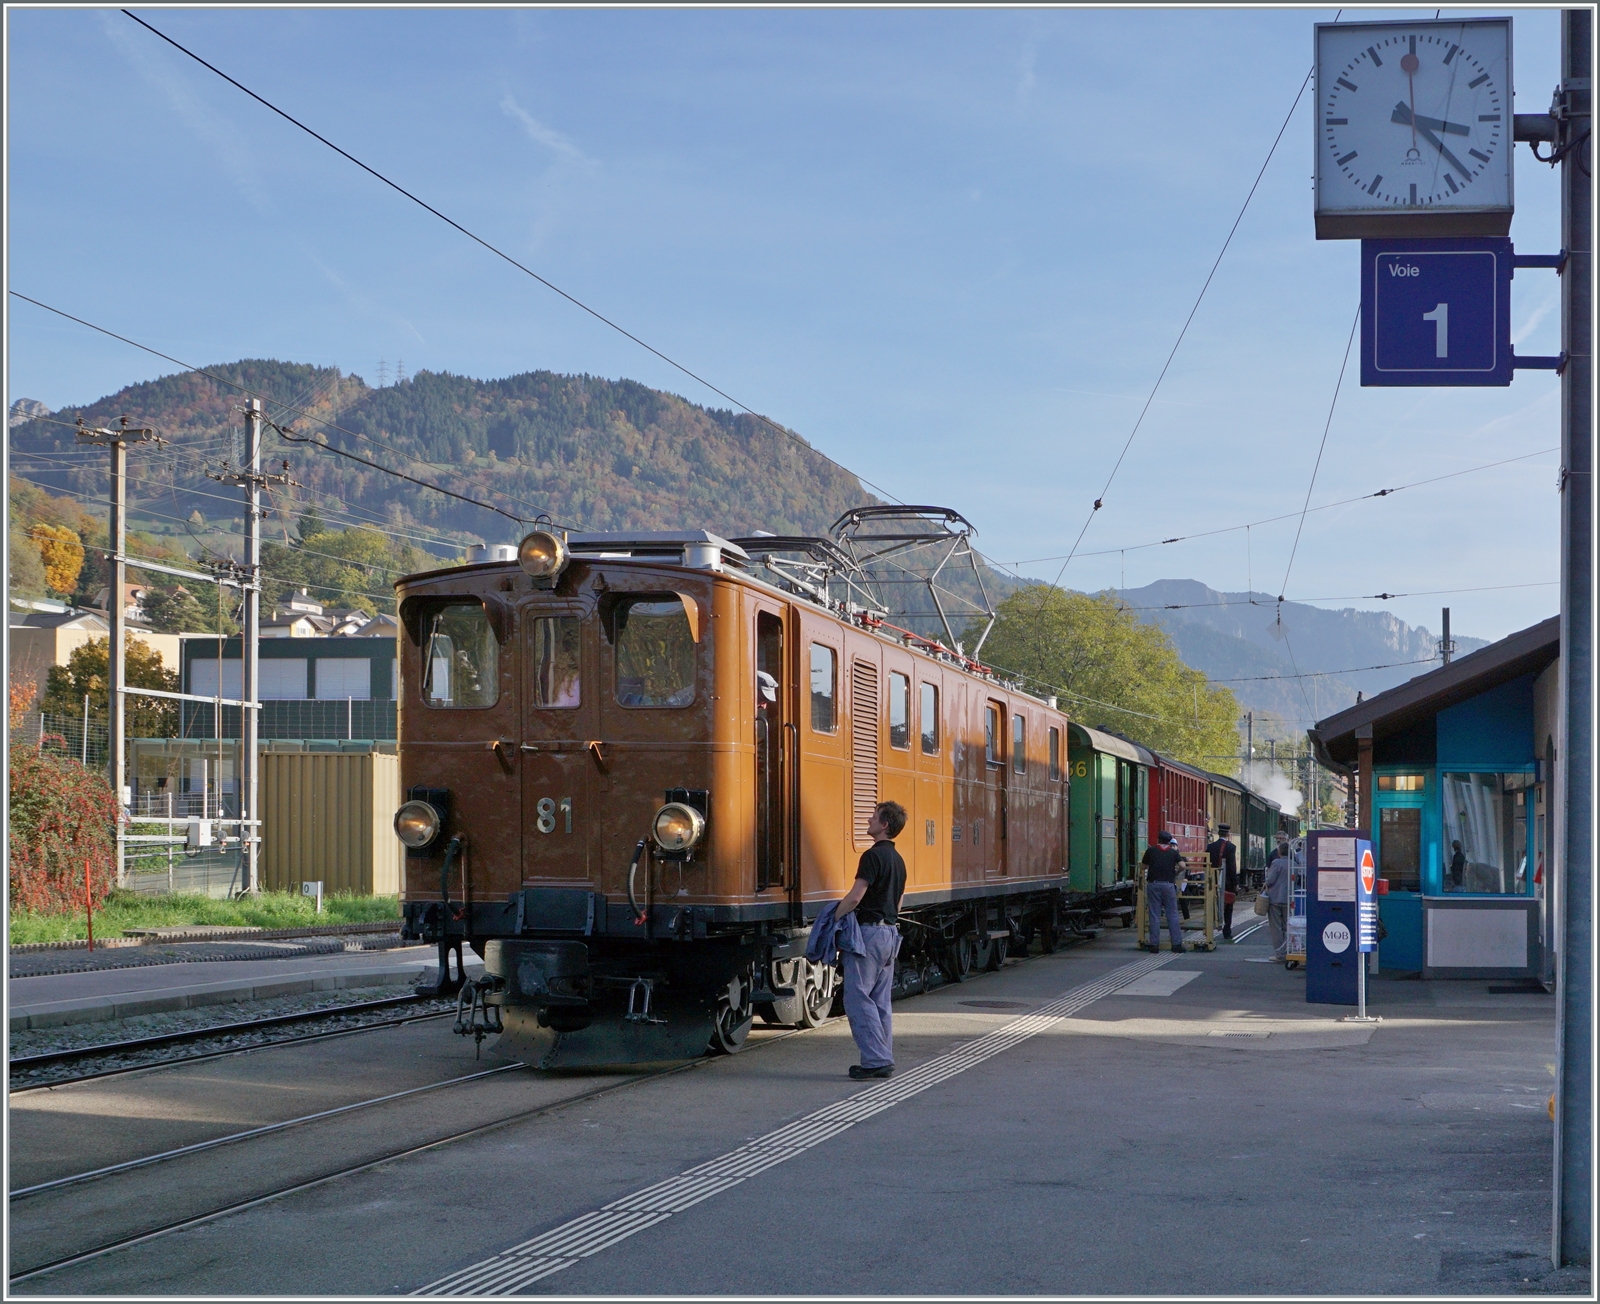  La DER de la Saison!  (Saisonabschlussfeier der Blonay-Chamby Bahn 2022) - Die Bernina Bahn RhB Ge 4/4 81 der Blonay-Chamby Bahn hat mit dem  Riviera Belle Epoque Express von Chaulin 
nach Vevey Blonay erreicht. 

30. Okt. 2022